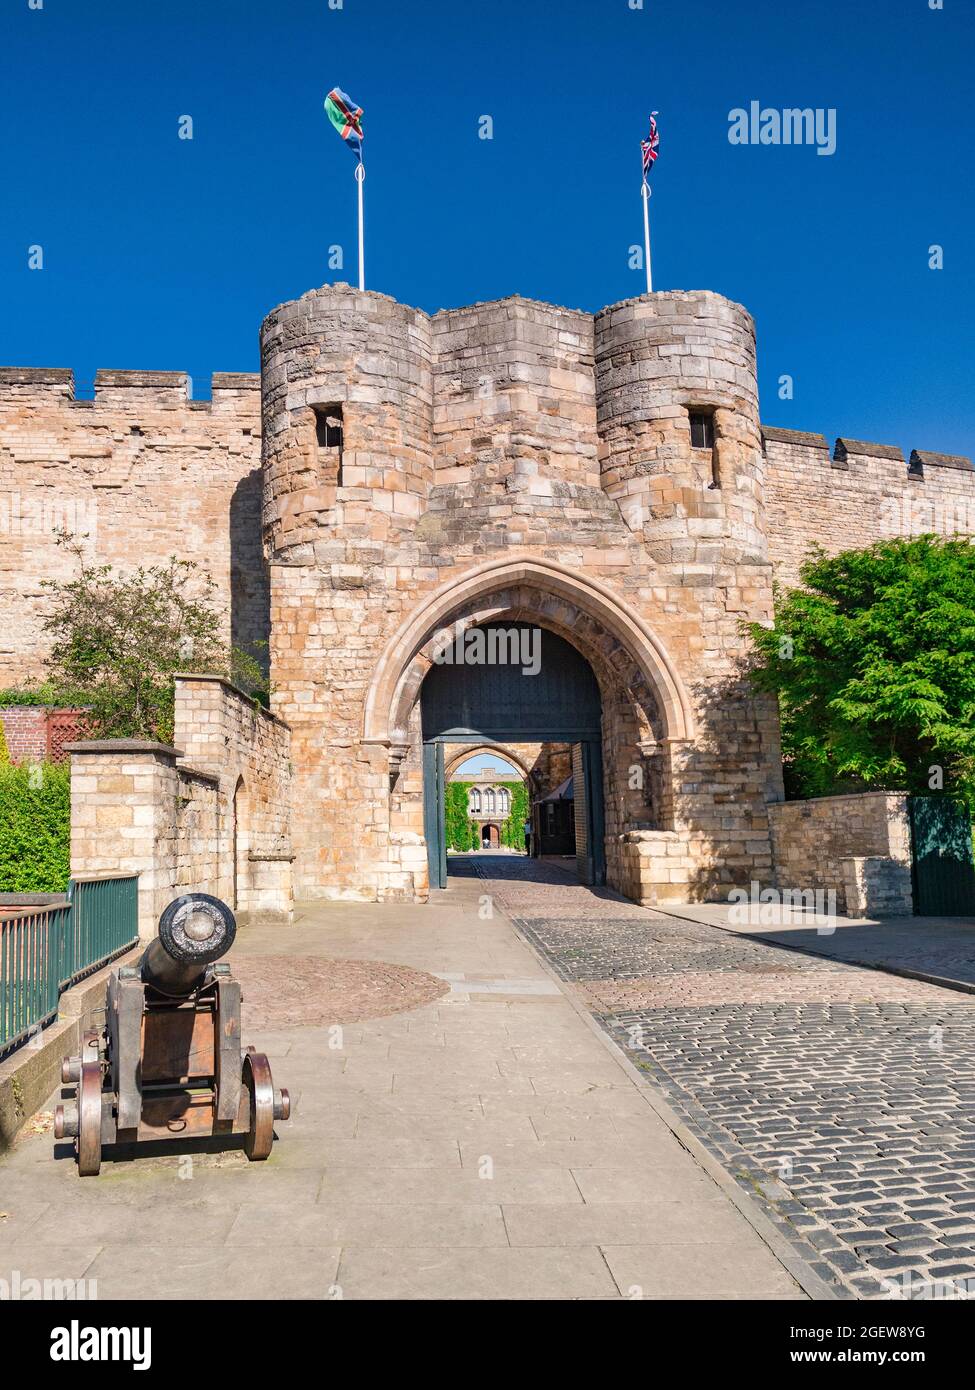 2 July 2019 Lincoln, UK - der Eingang zum Schloss und eine alte Kanone, die draußen sianding. Stockfoto